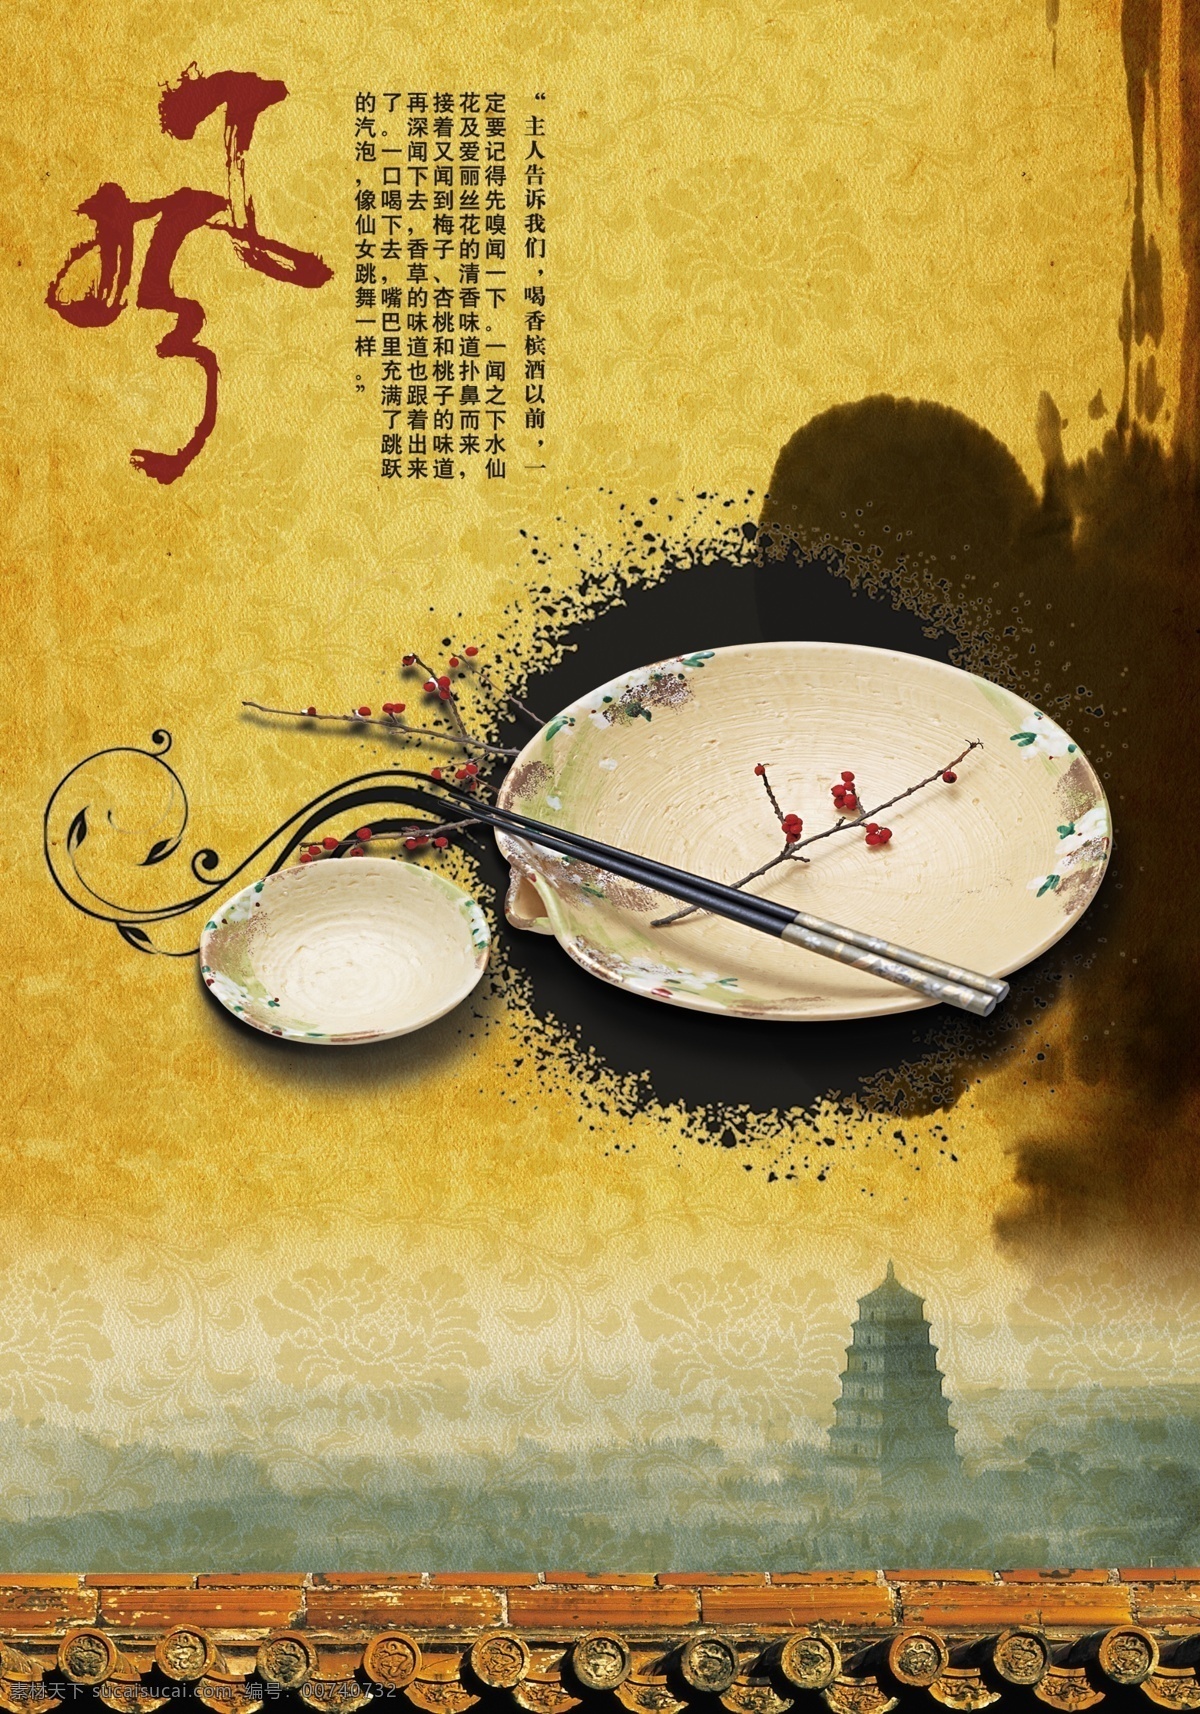 古典 复古 中国 风 瓷器 海报 瓷器海报 中国风 中国风海报 psd素材 墨迹 水墨 底纹 瓷器宣传海报 毛笔字 大气海报 黄色